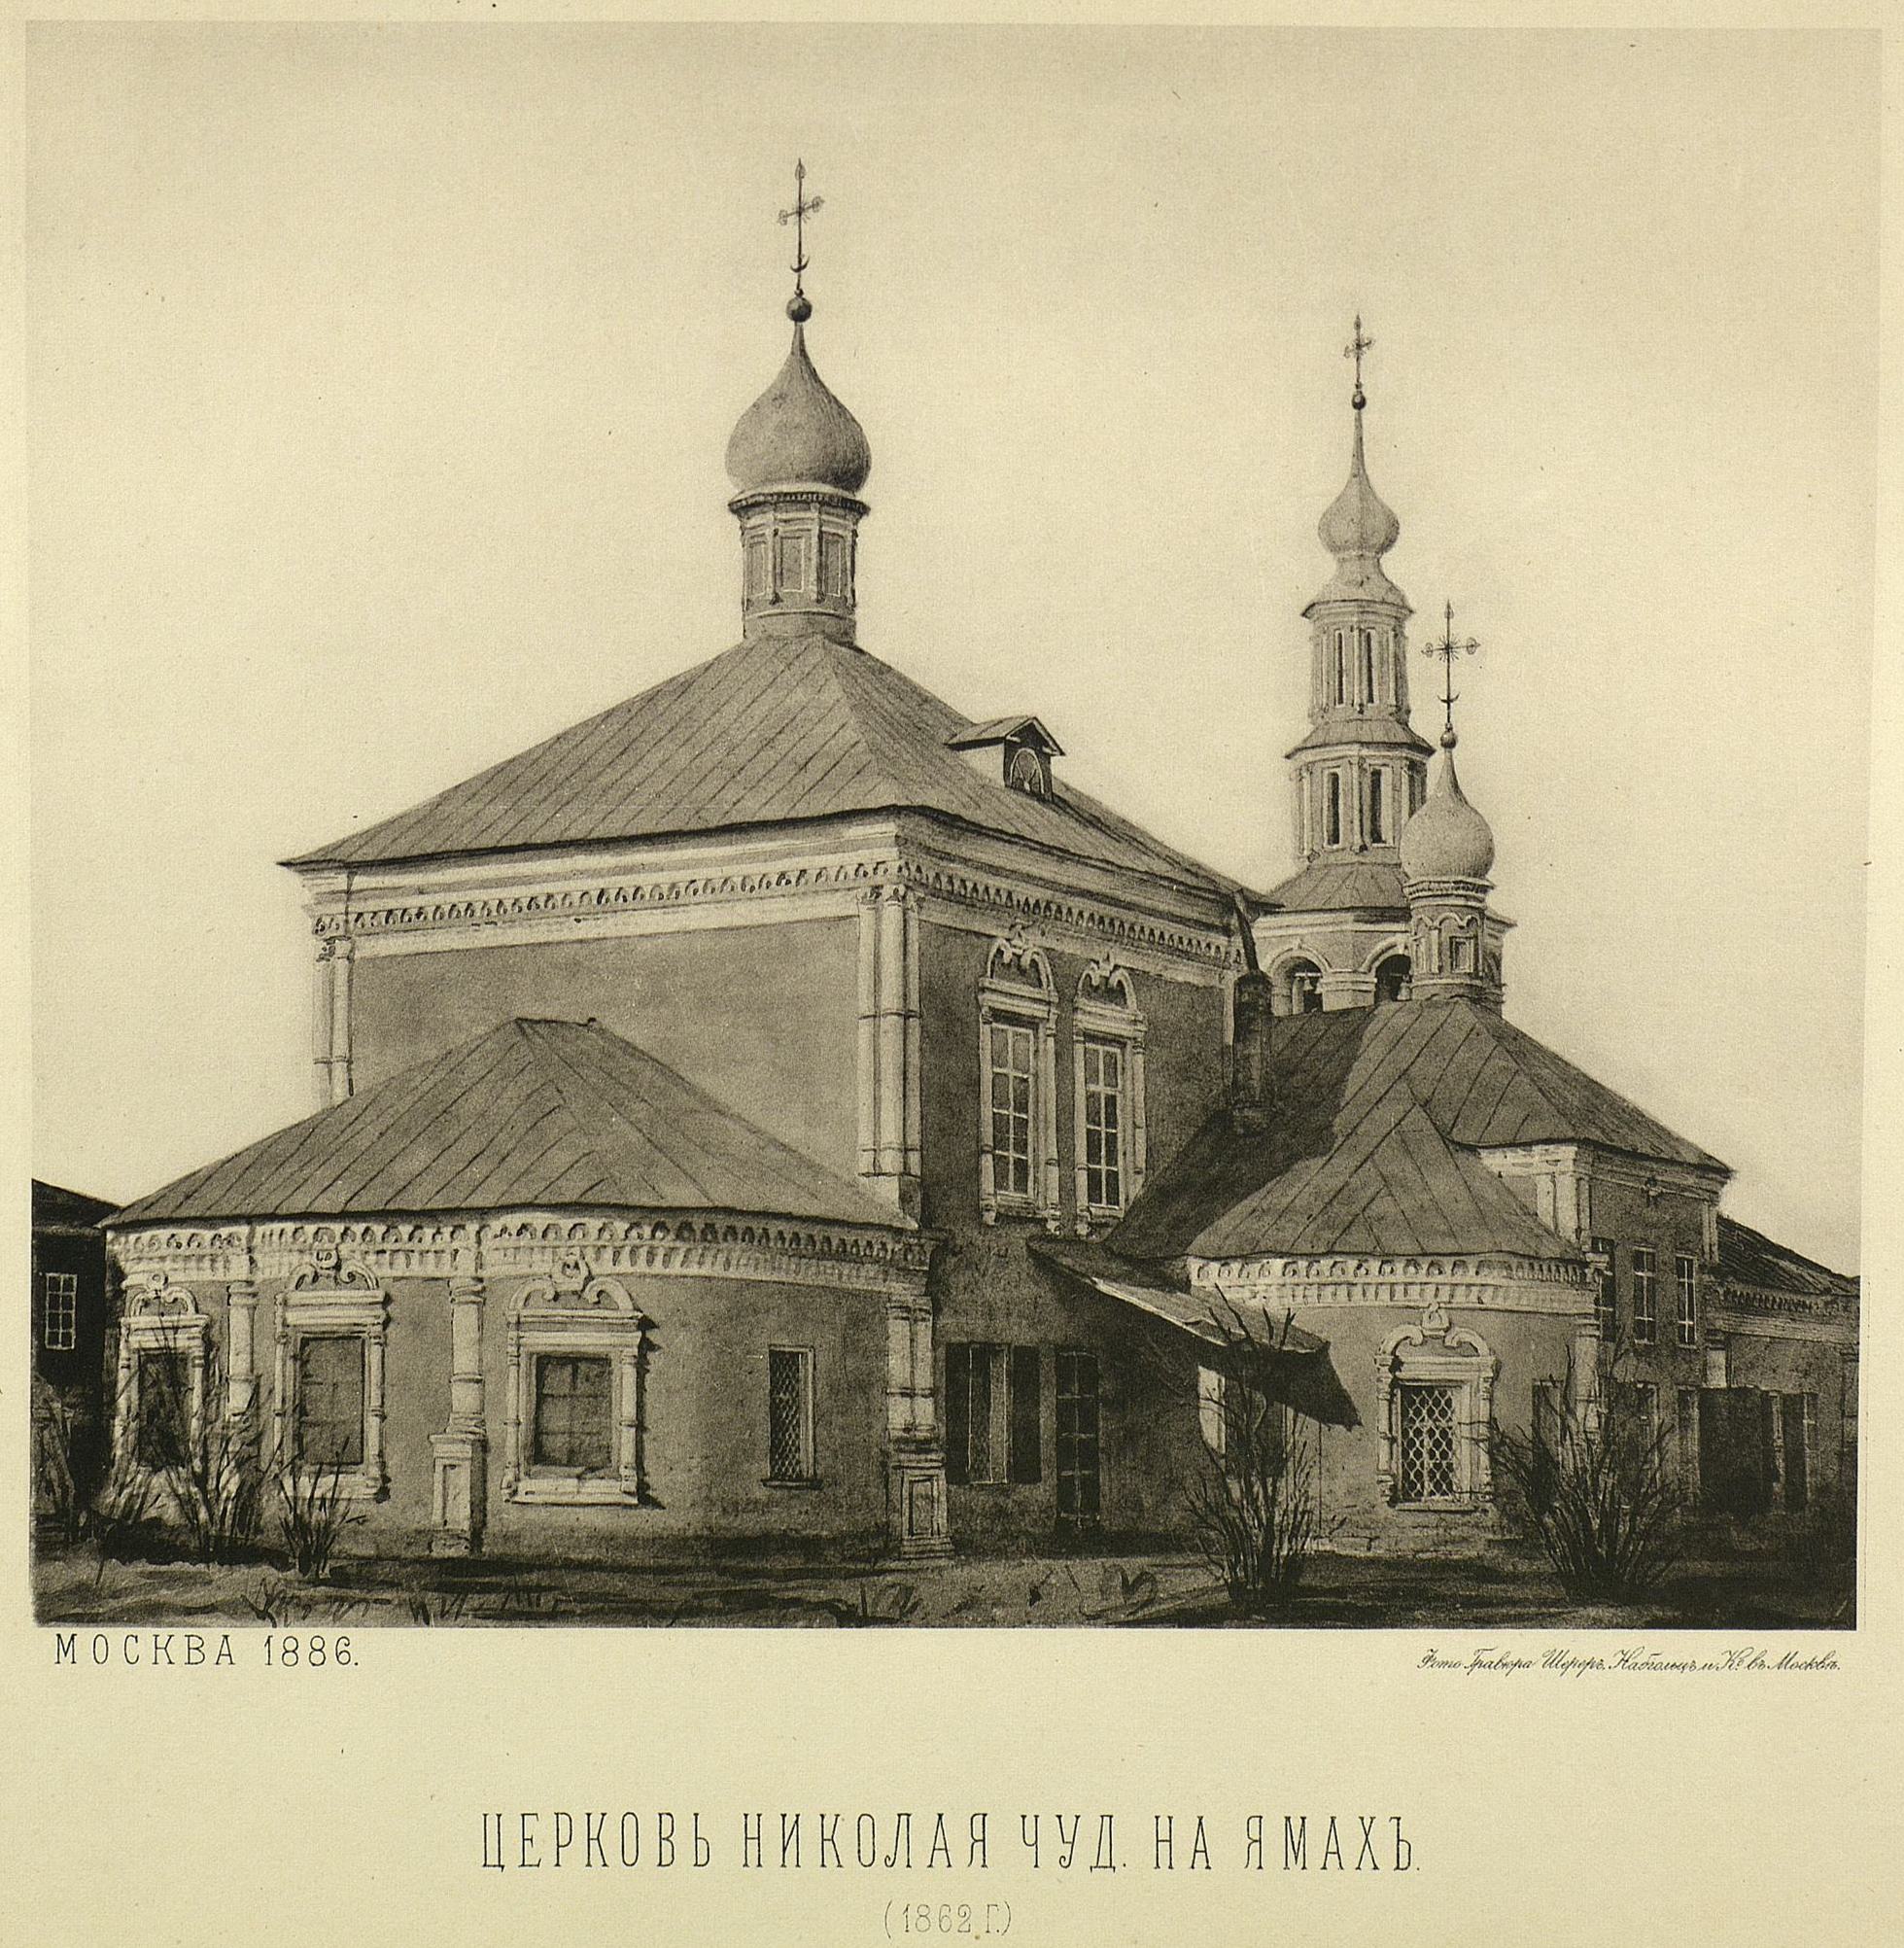 XL. — Церковь Николая чуд. на Ямах; вид с северо-восточной стороны — с монастыря (с фотографического снимка, сделанного в мае 1862 г.).